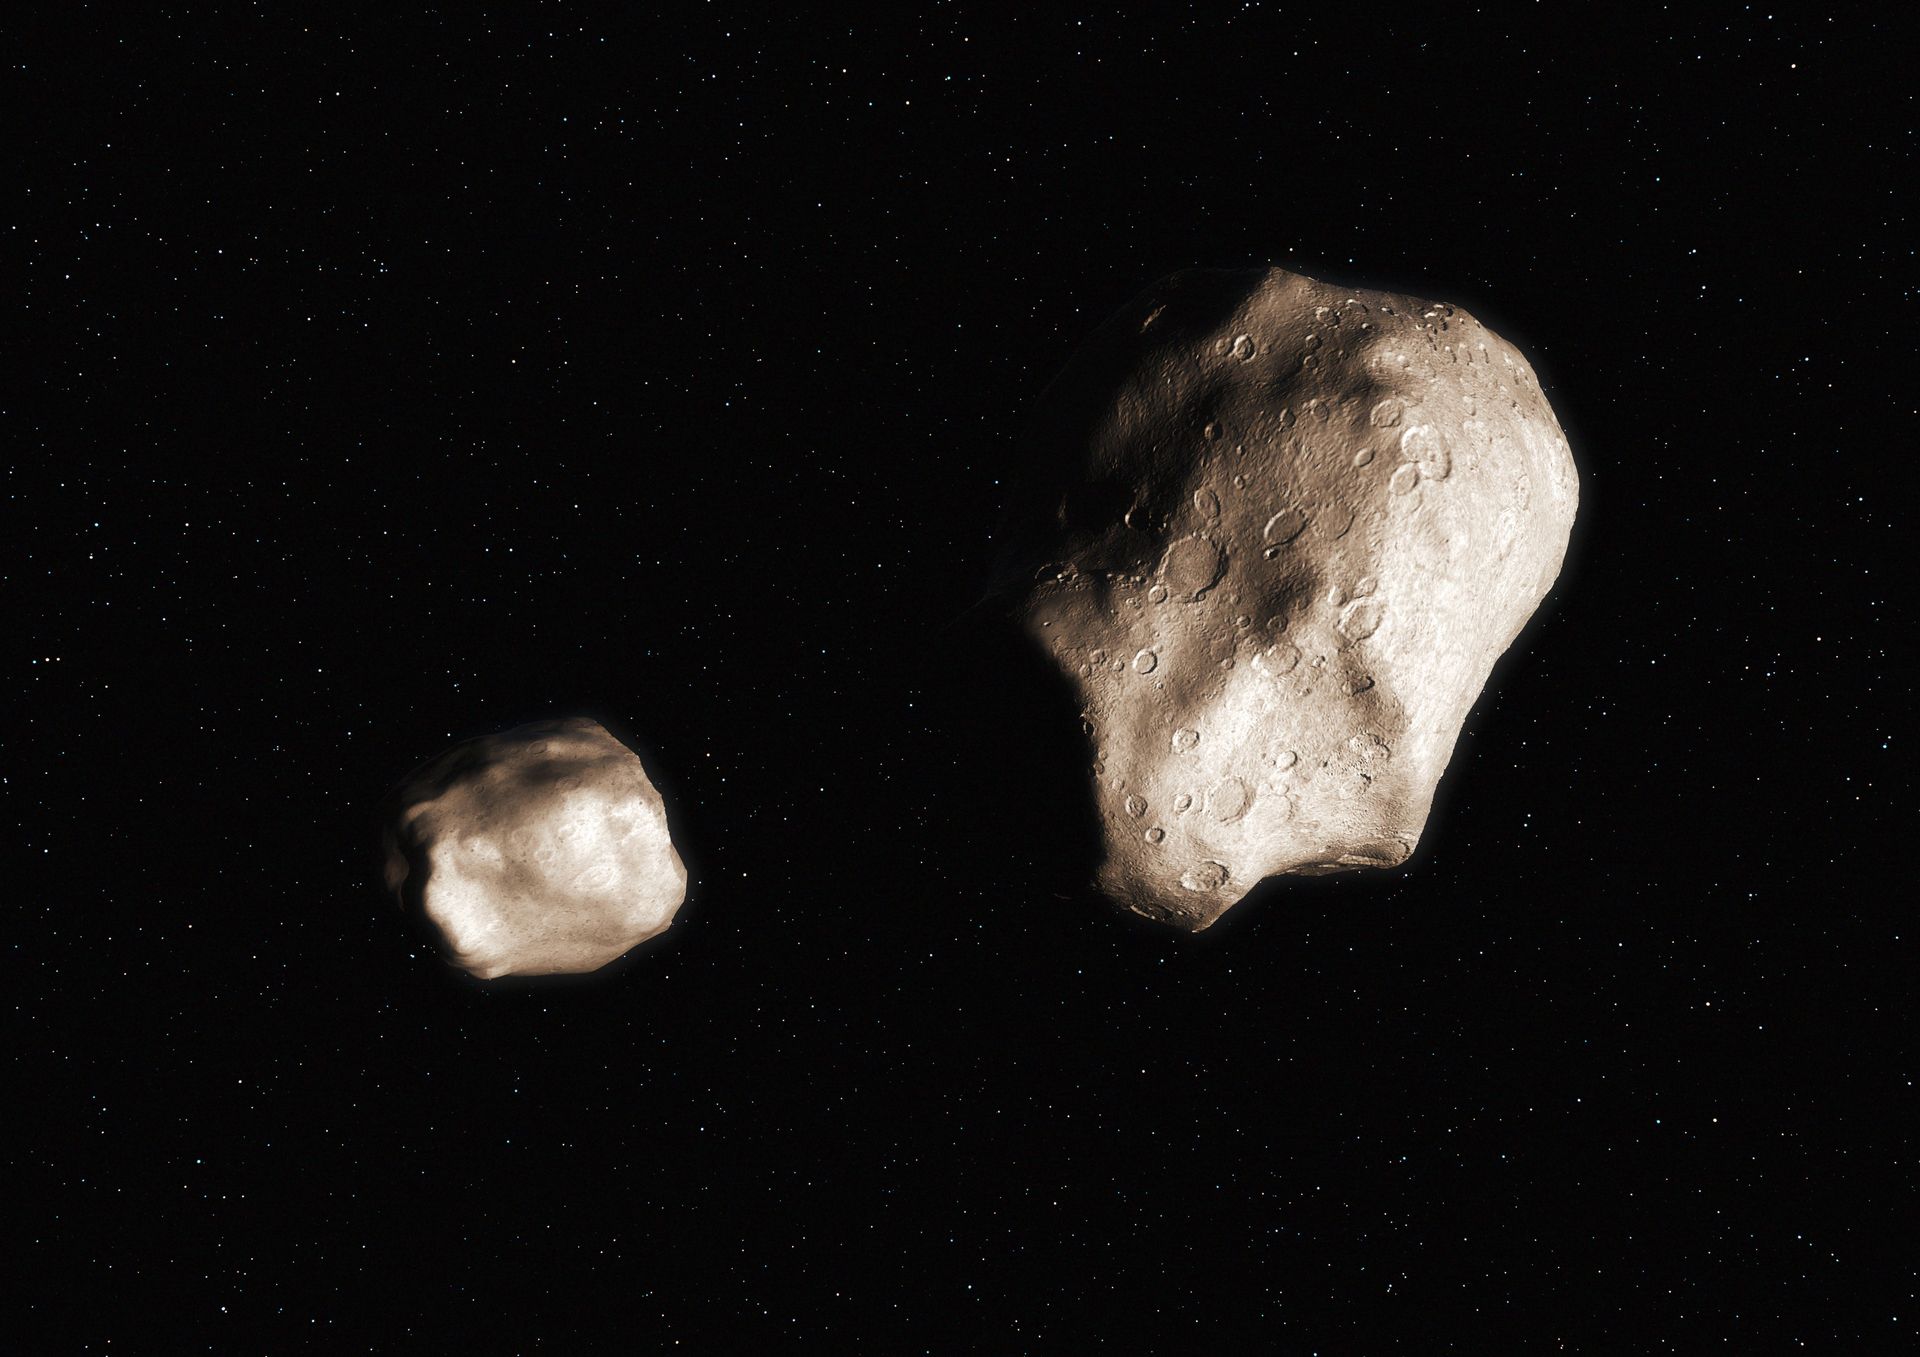 gigantyczne asteroidy zmierzają w stronę ziemi. zdaniem ekspertów są potencjalnie niebezpieczne